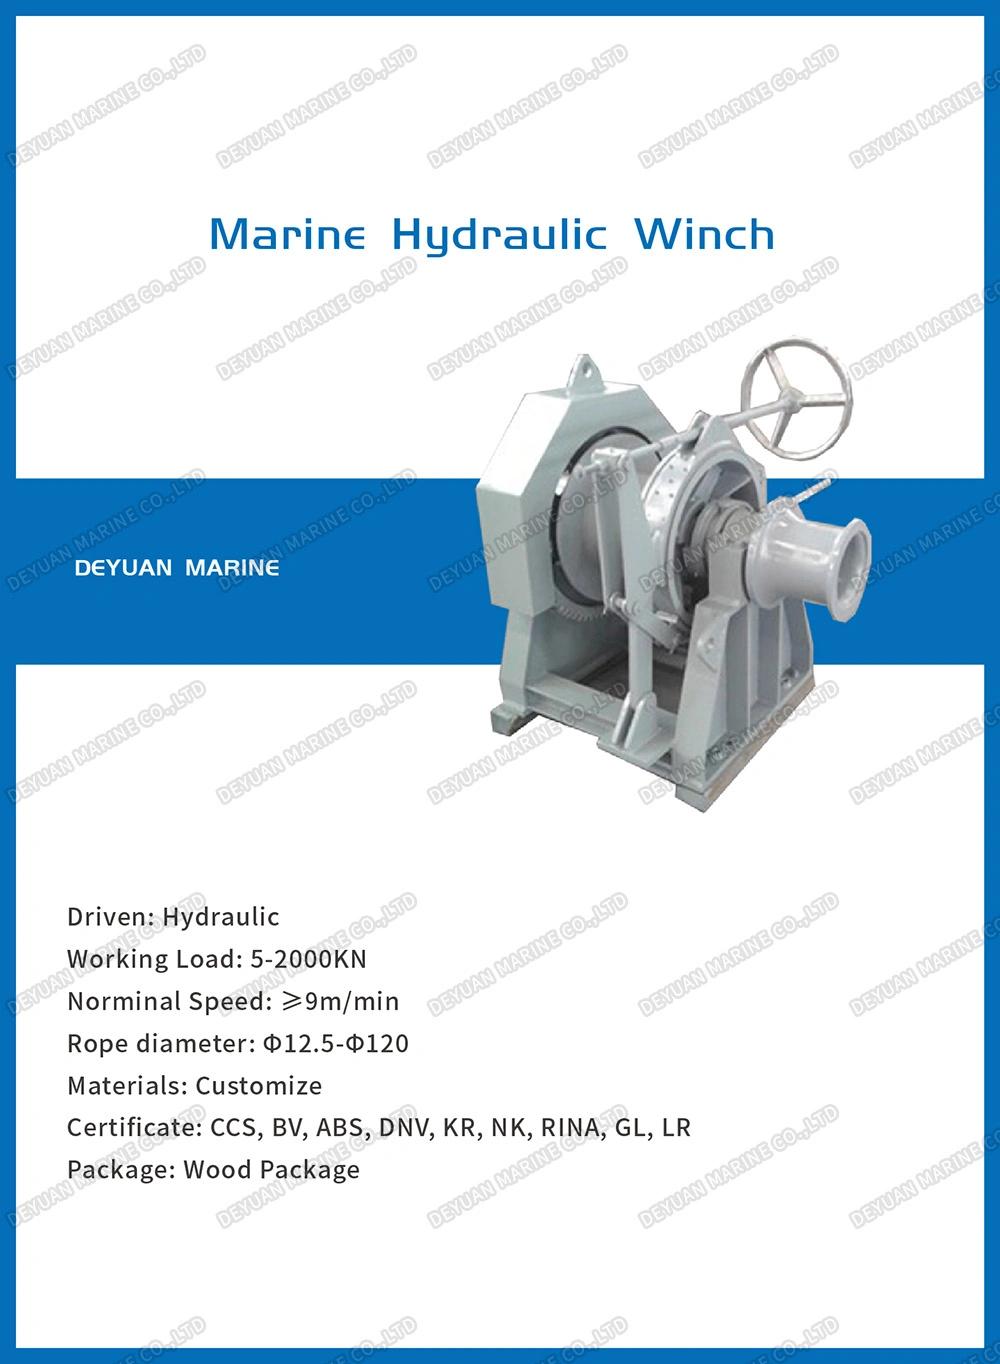 Marine Hydraulic One Drum Mooring Winch for Boat